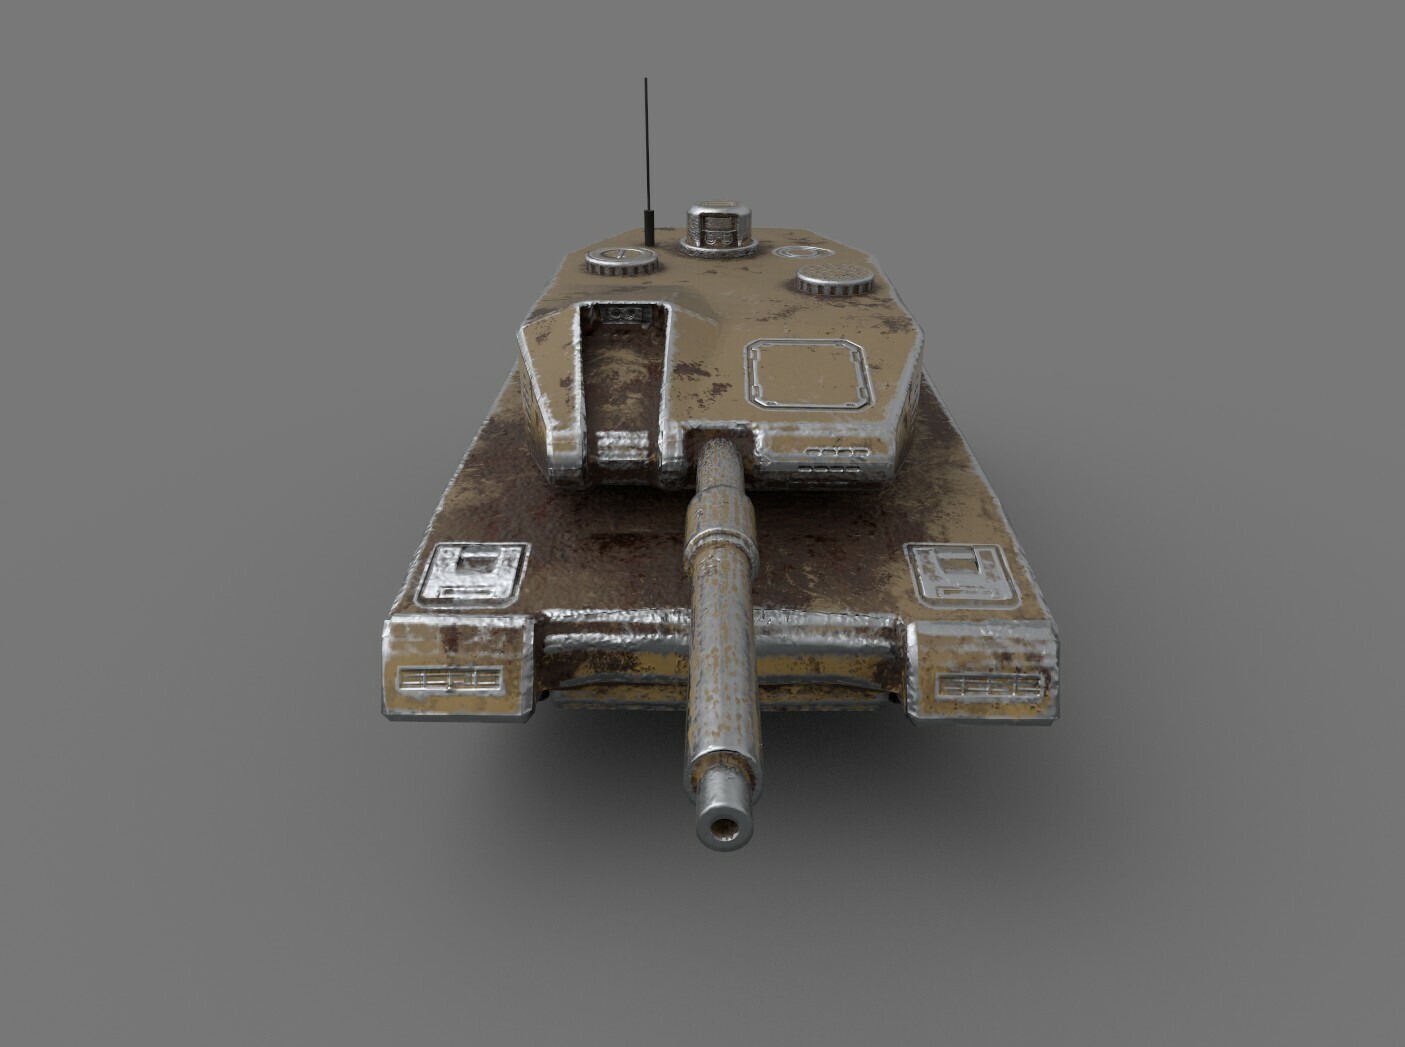 Rusty Leopard 2 tank